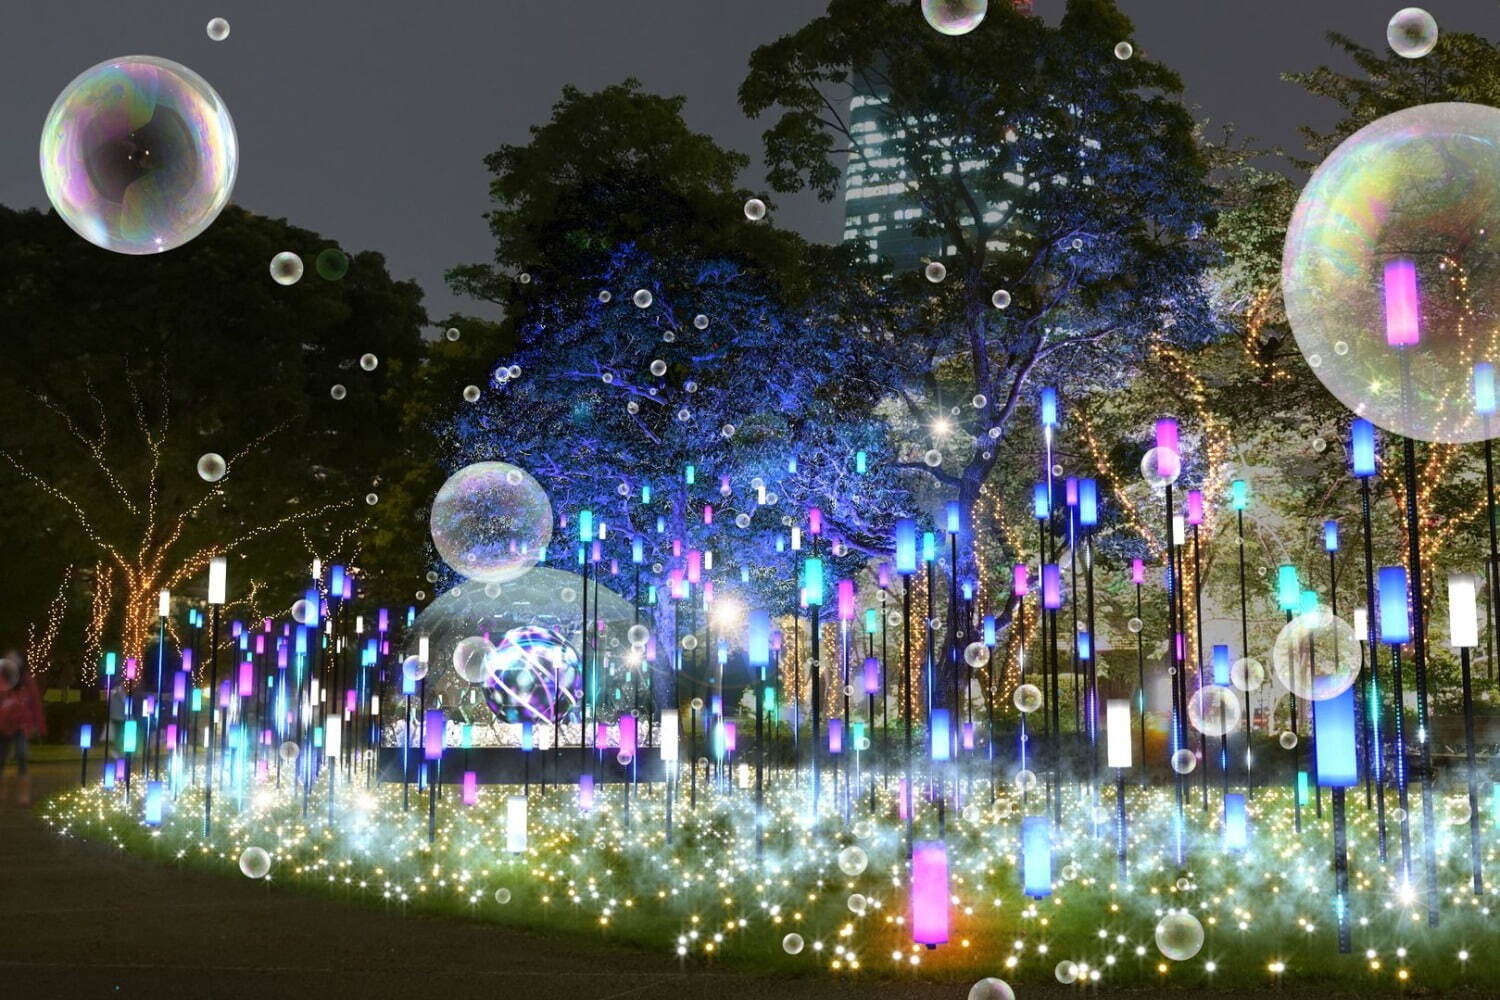 Tokyo Midtown Winter Illumination 2022